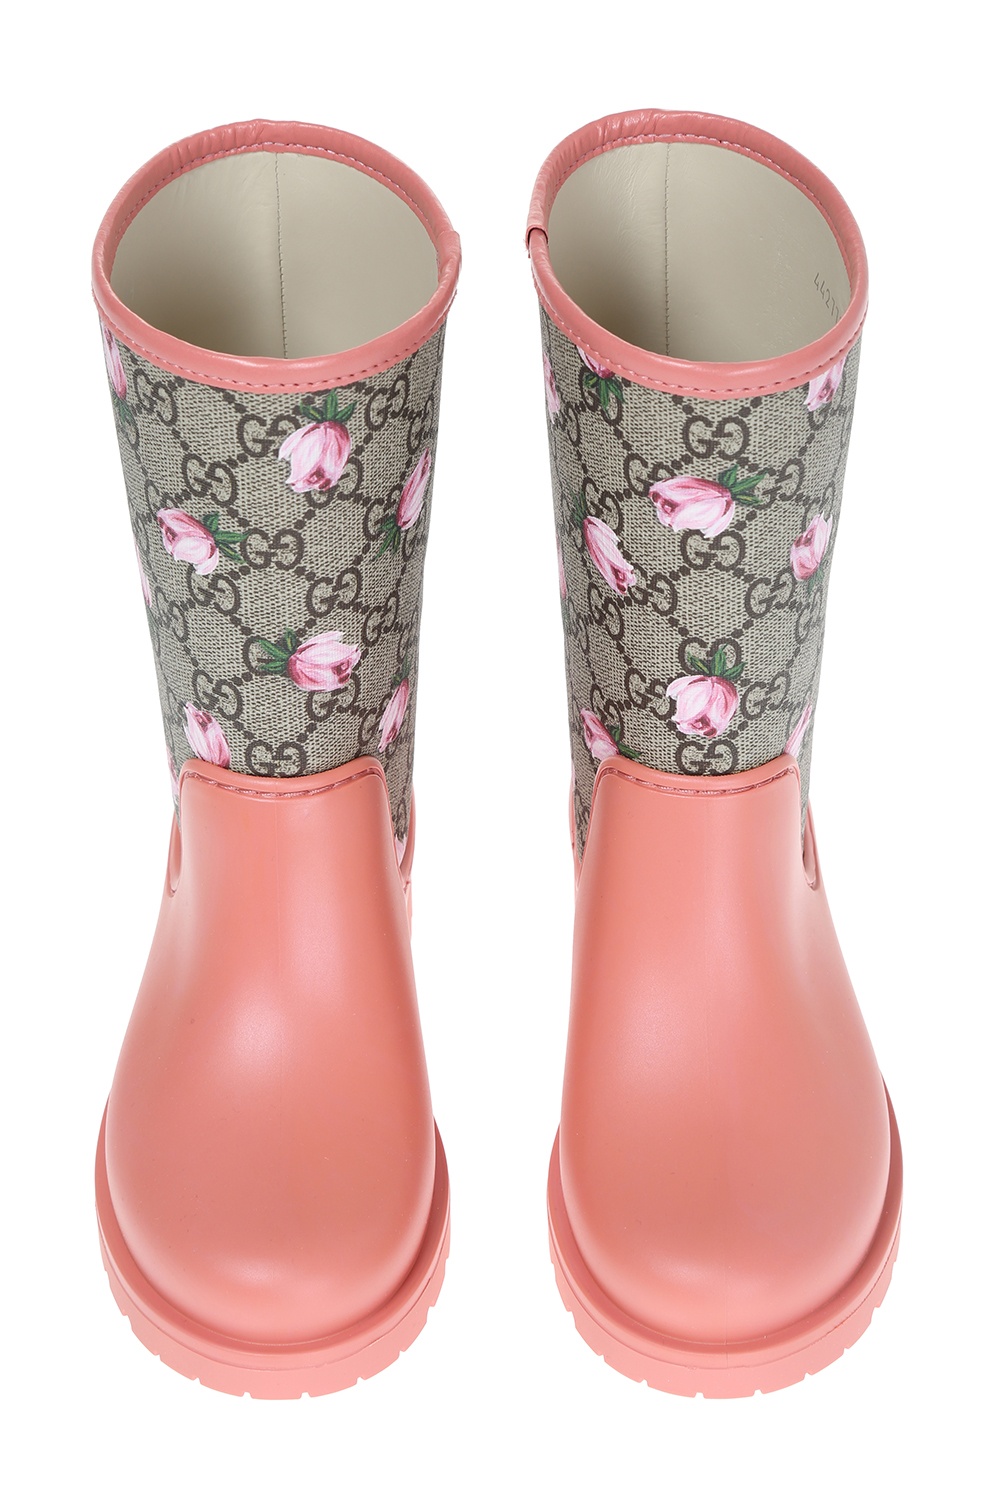 gucci baby rain boots